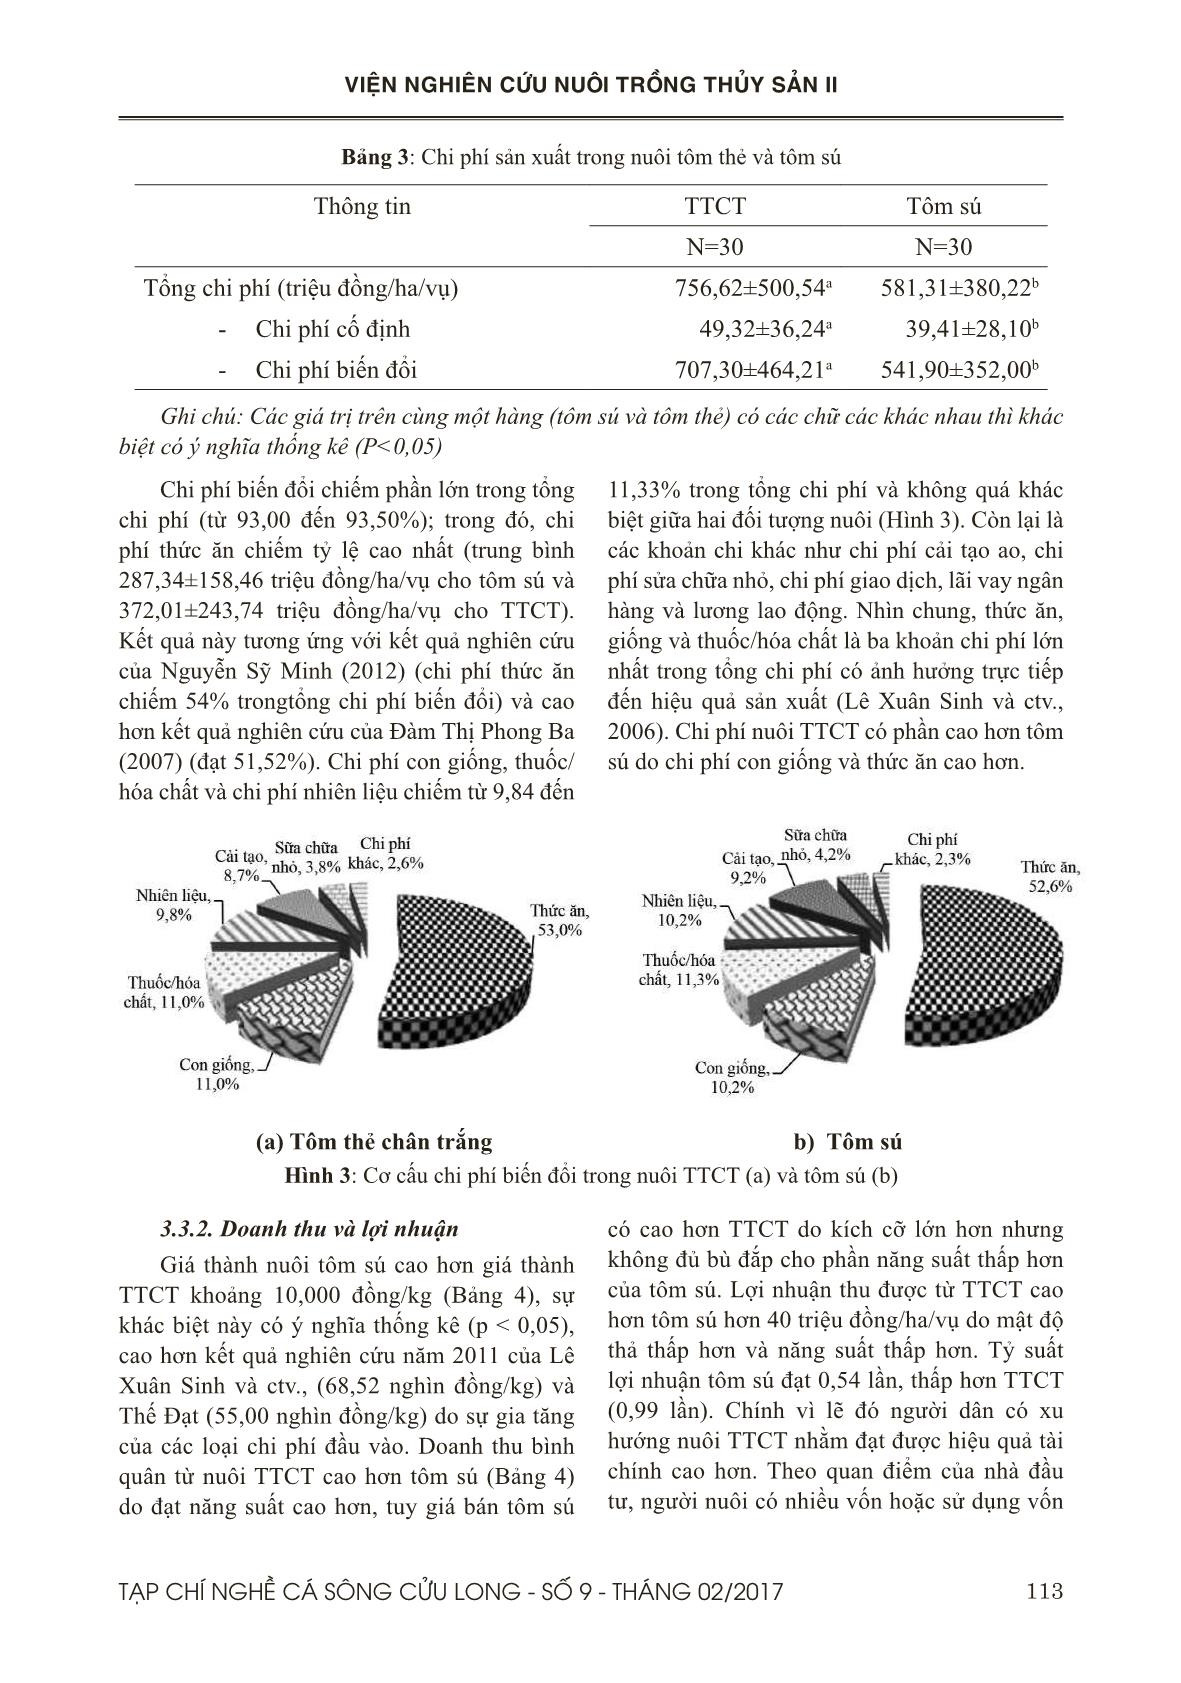 Hiệu quả và các yếu tố ảnh hưởng đến sự lựa chọn đối tượng tôm nuôi thâm canh ở tỉnh Bến Tre trang 6